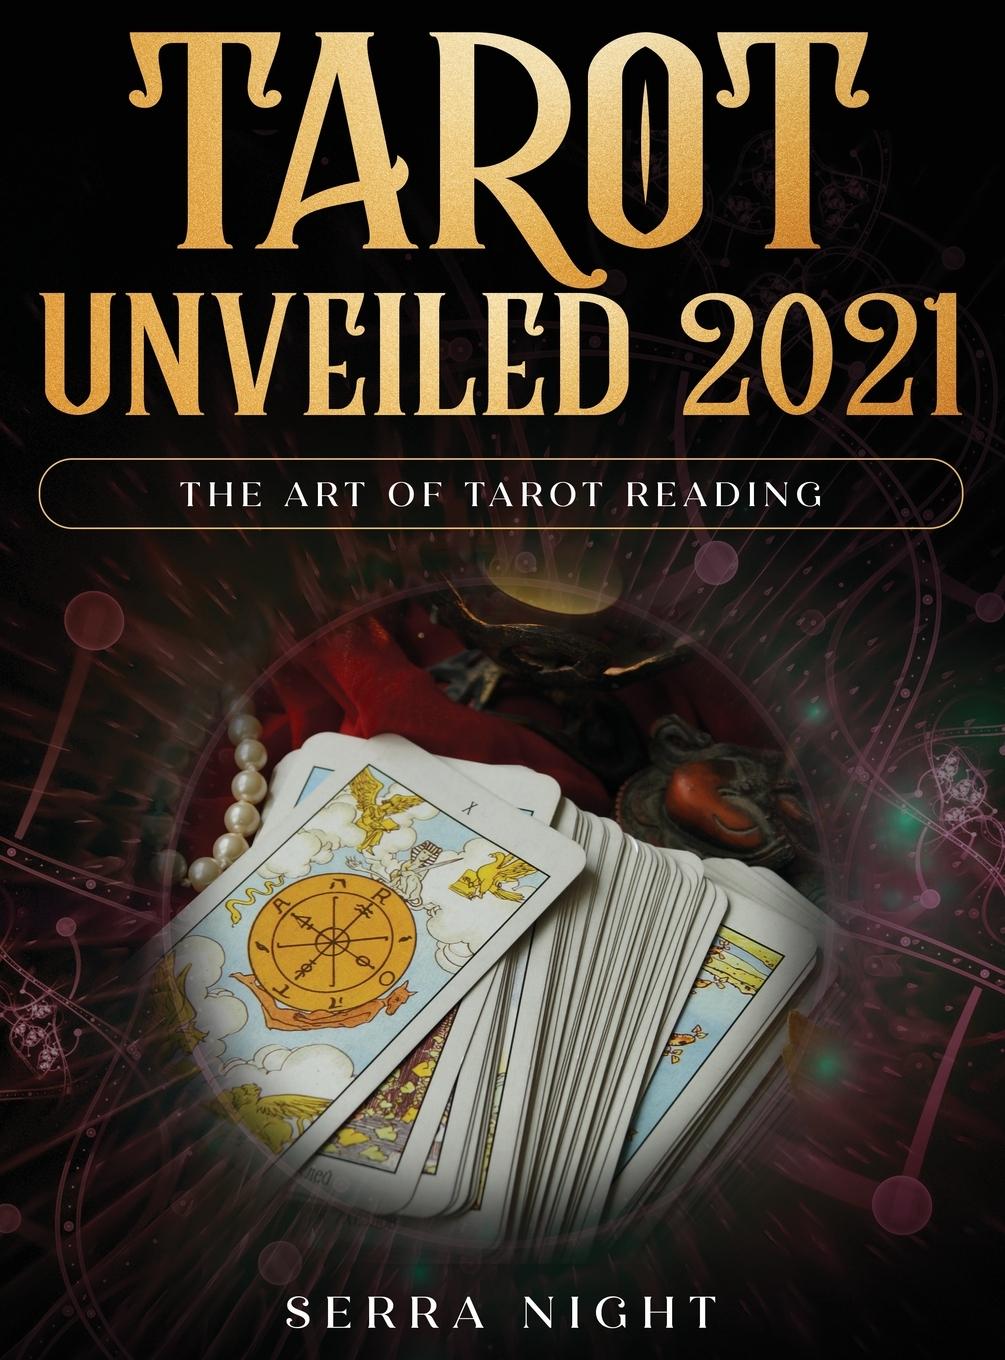 Carte Tarot Unveiled 2021 